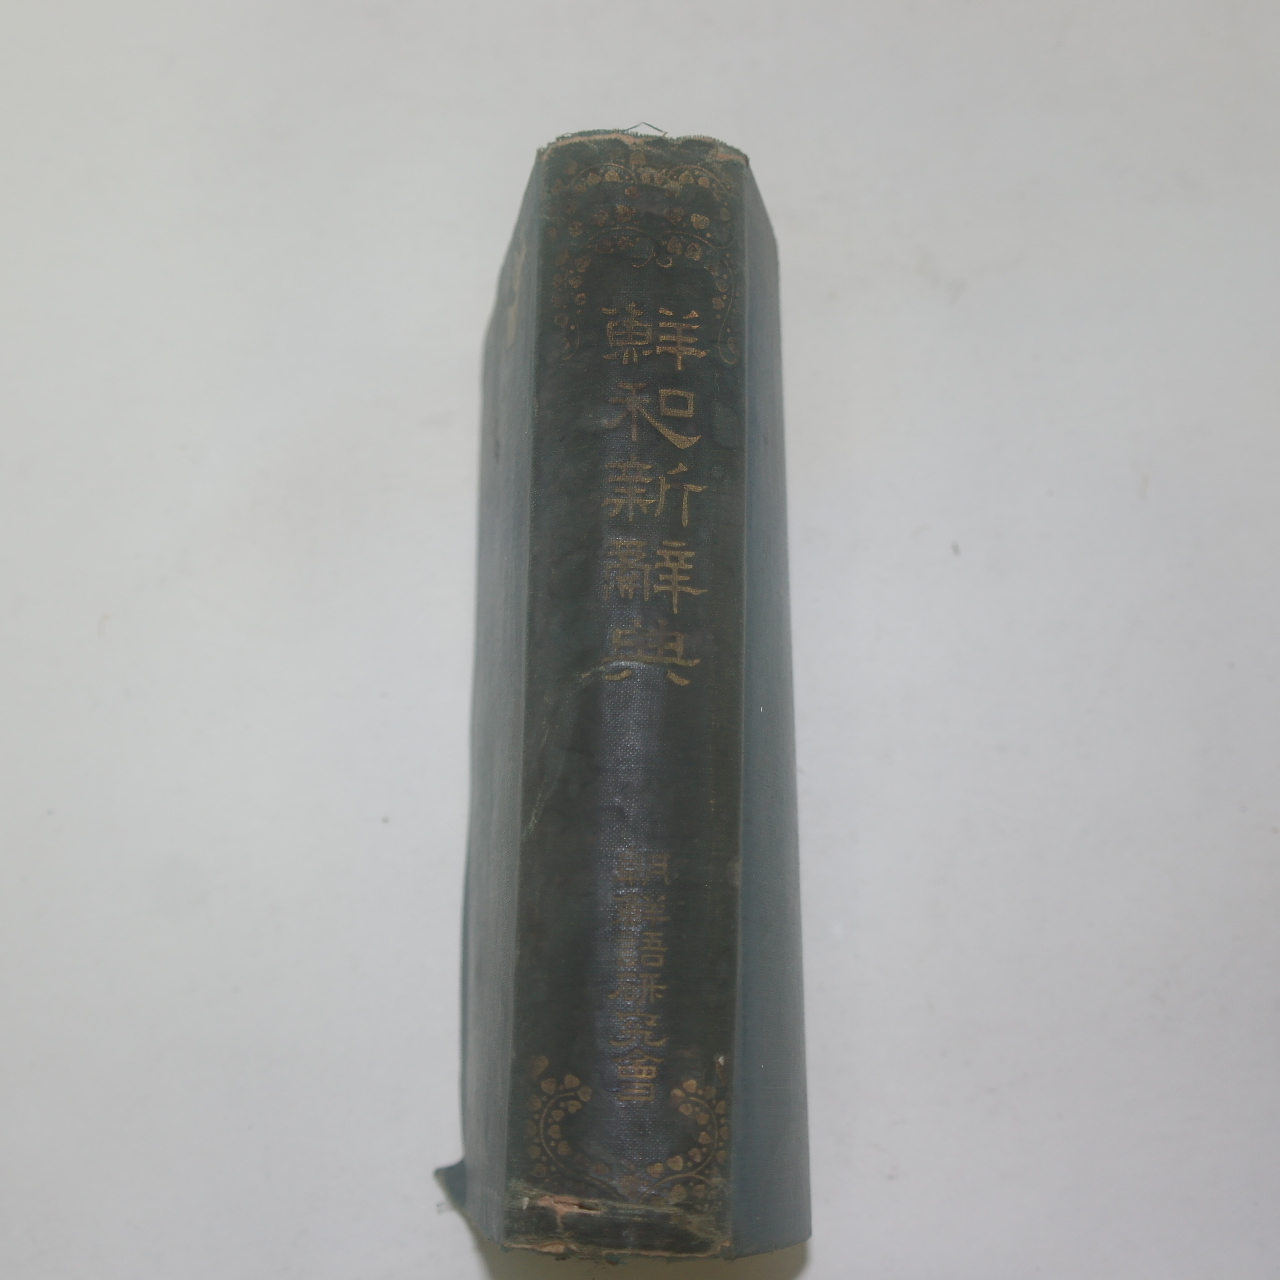 1930년 경성 조선어연구회간행 선화신사전(鮮和新辭典) 1책완질